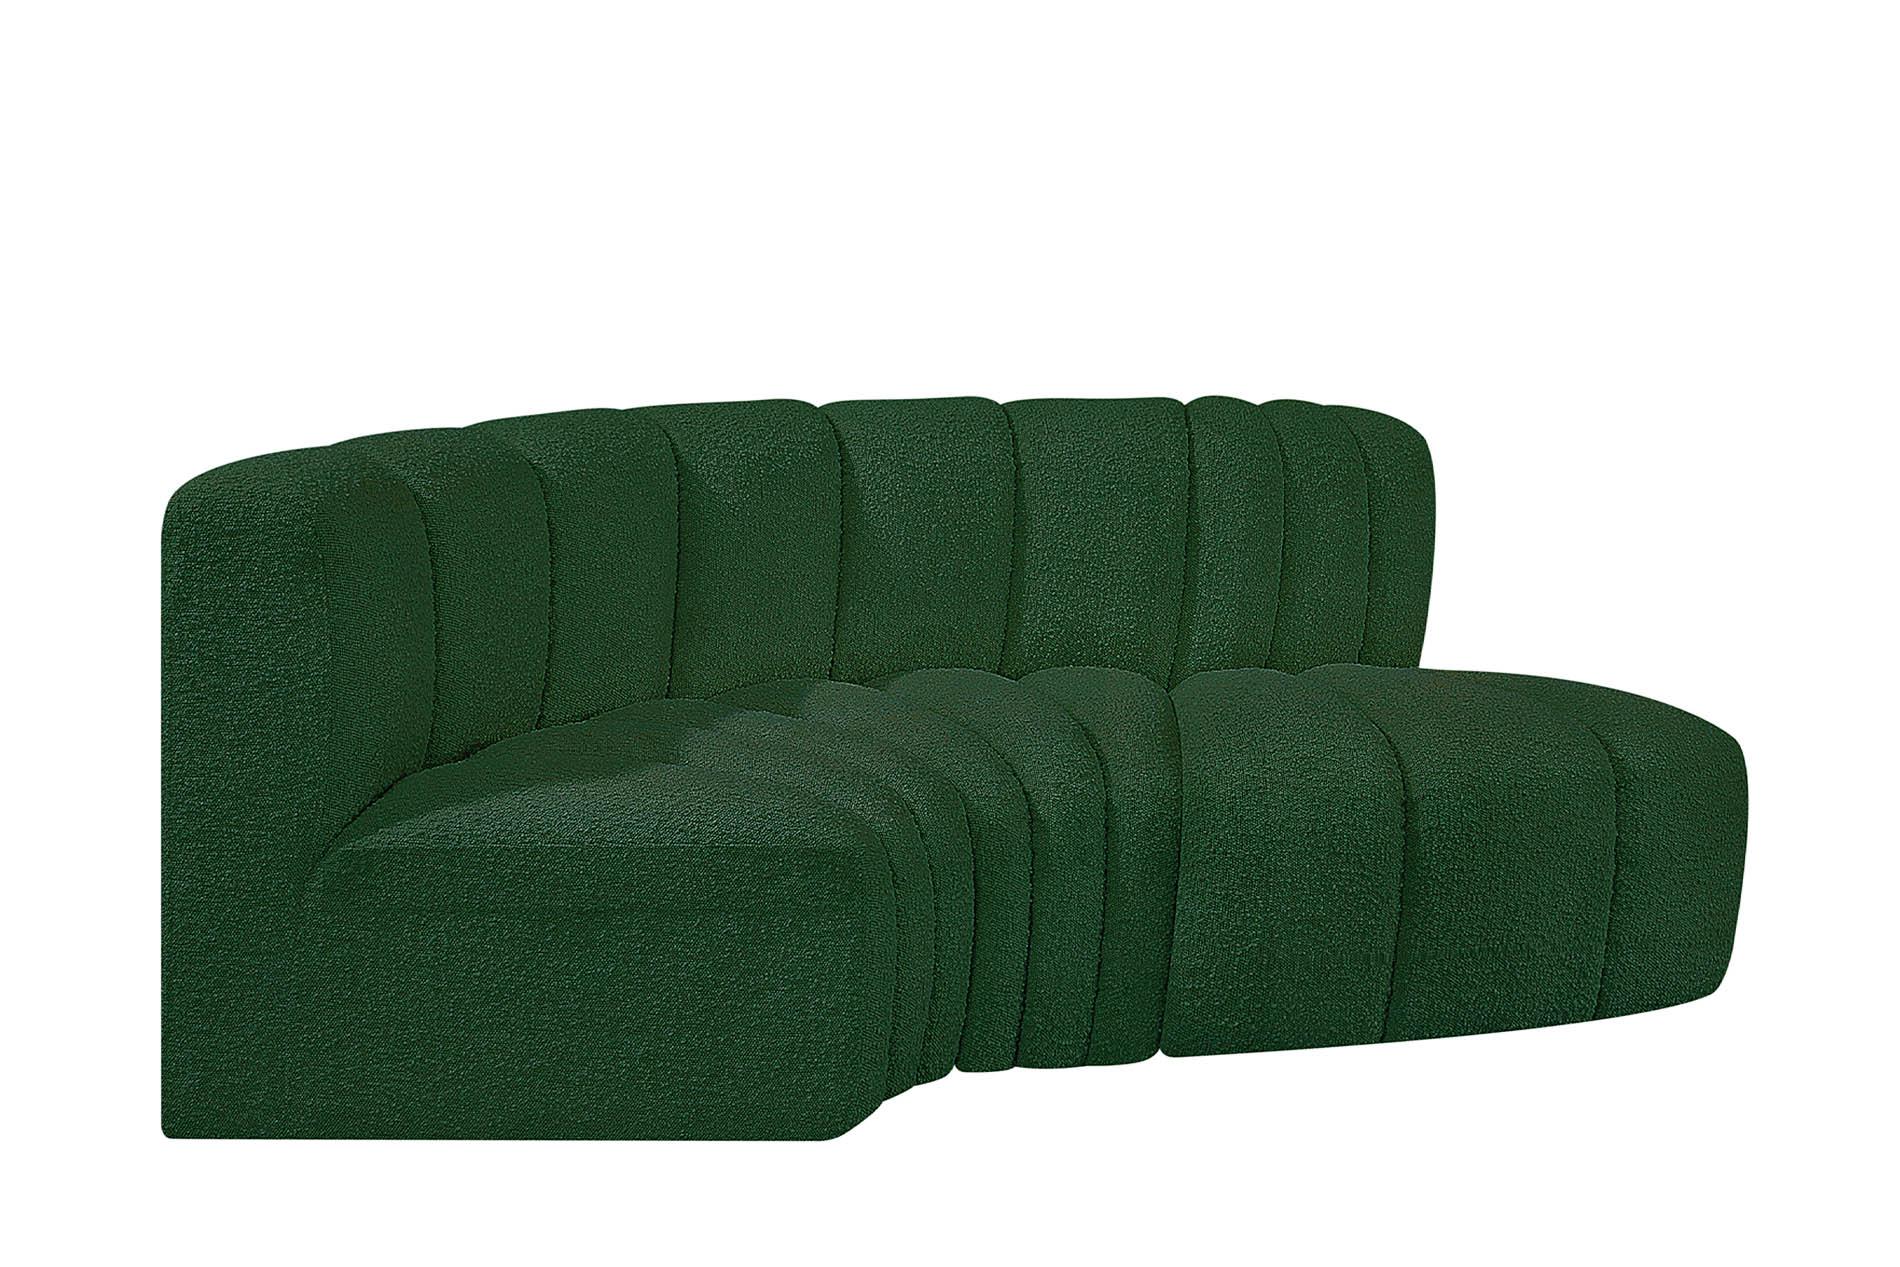 Contemporary, Modern Modular Sectional Sofa ARC 102Green-S3D 102Green-S3D in Green 